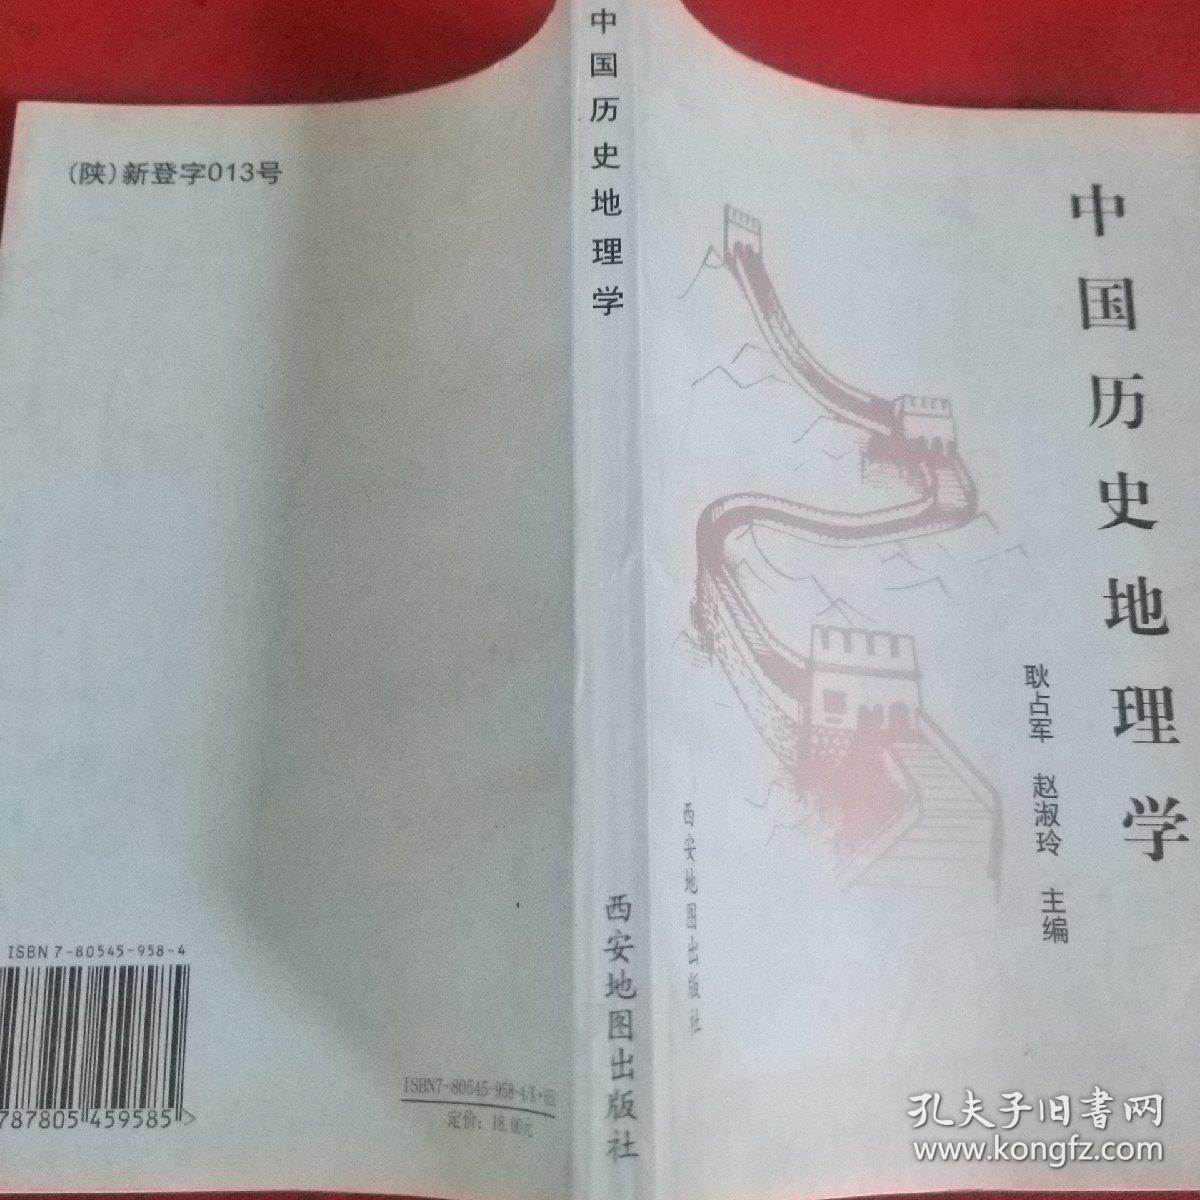 中国历史地理学  (2000册)